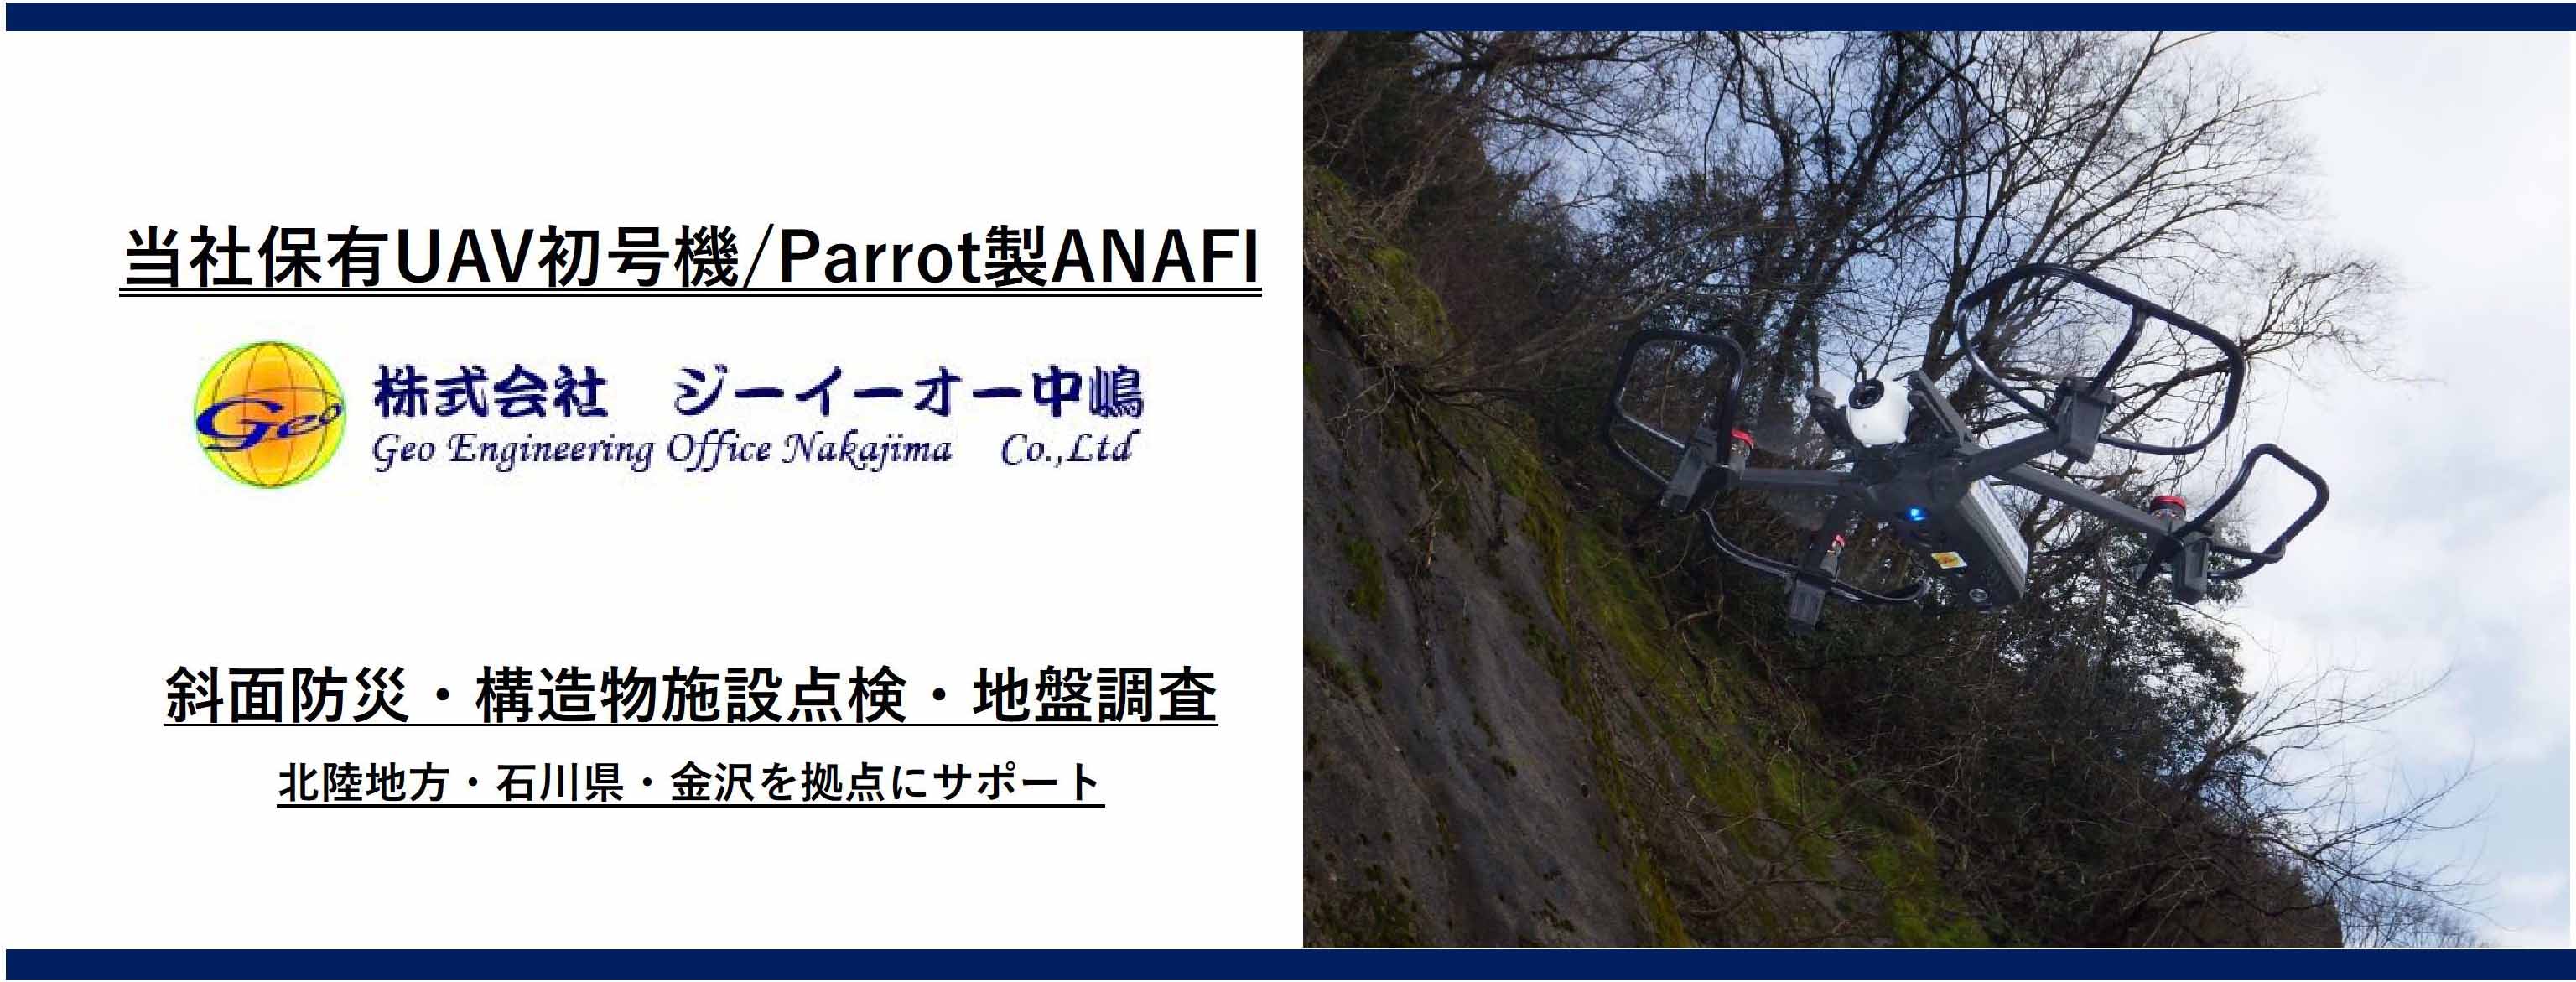 当社保有UAV初号機/Parrot製ANAFI